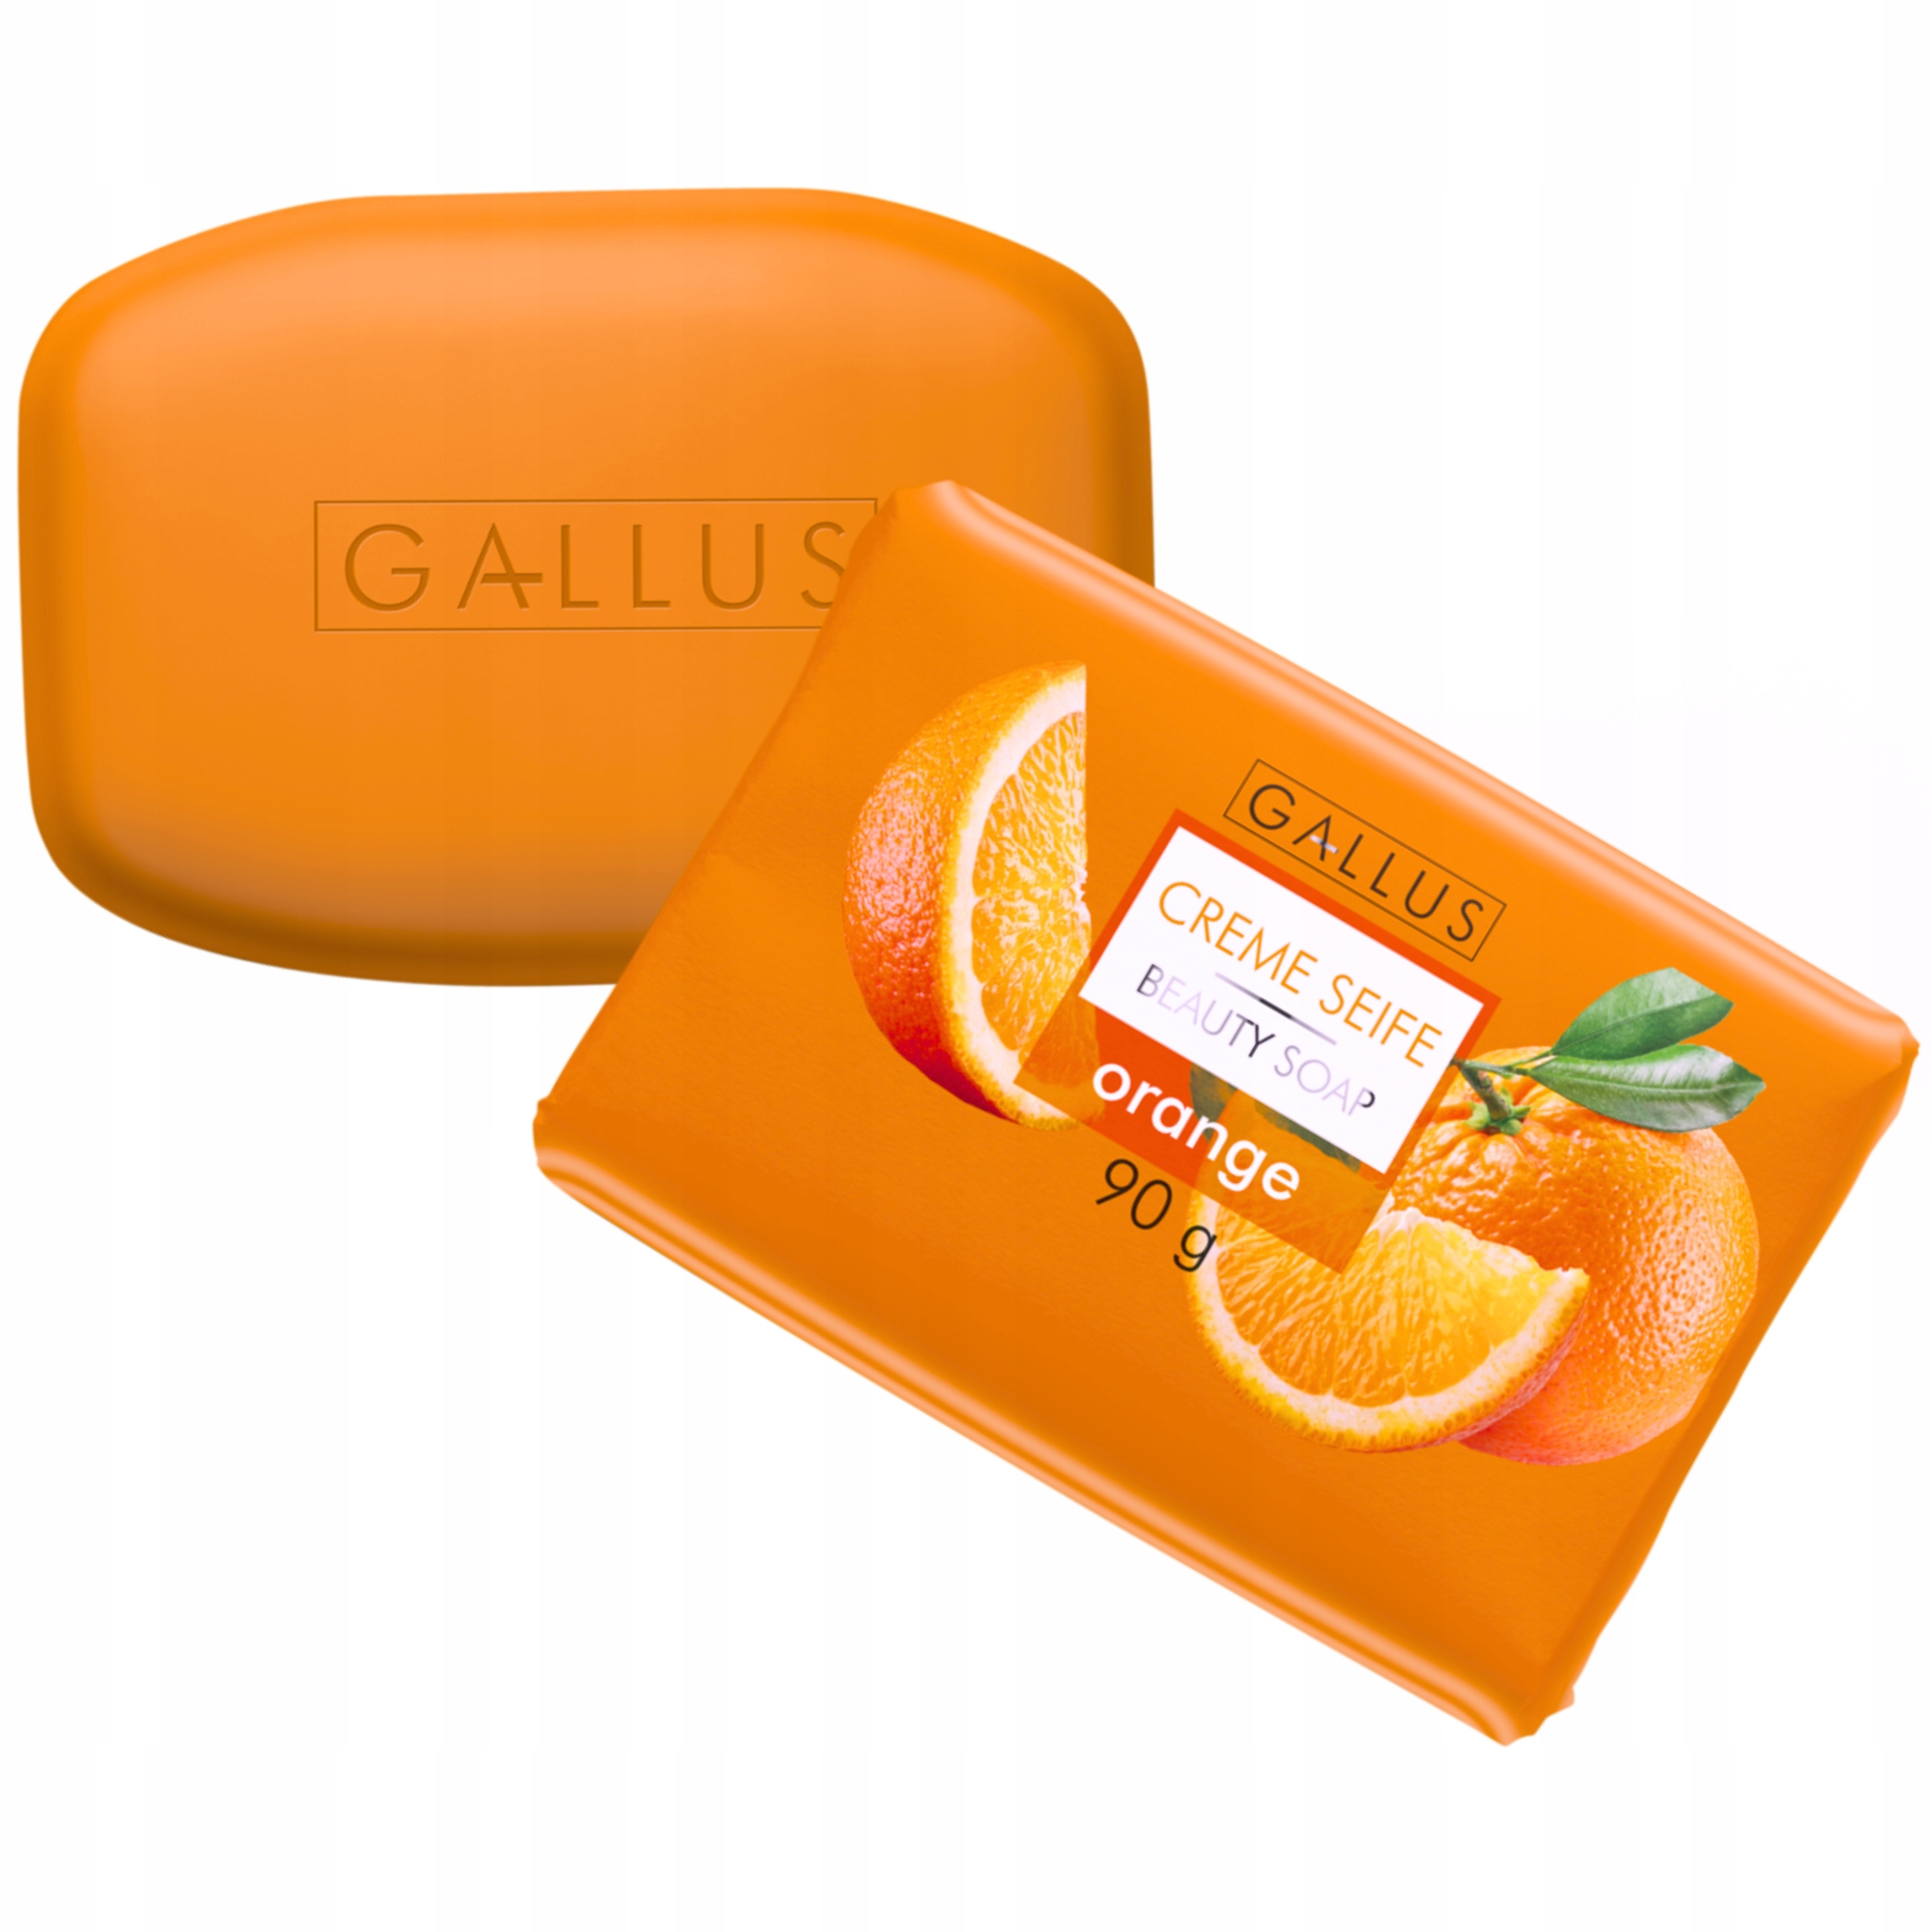 Gallus Pielęgnujące Mydło w Kostce Pomarańczowe 90g